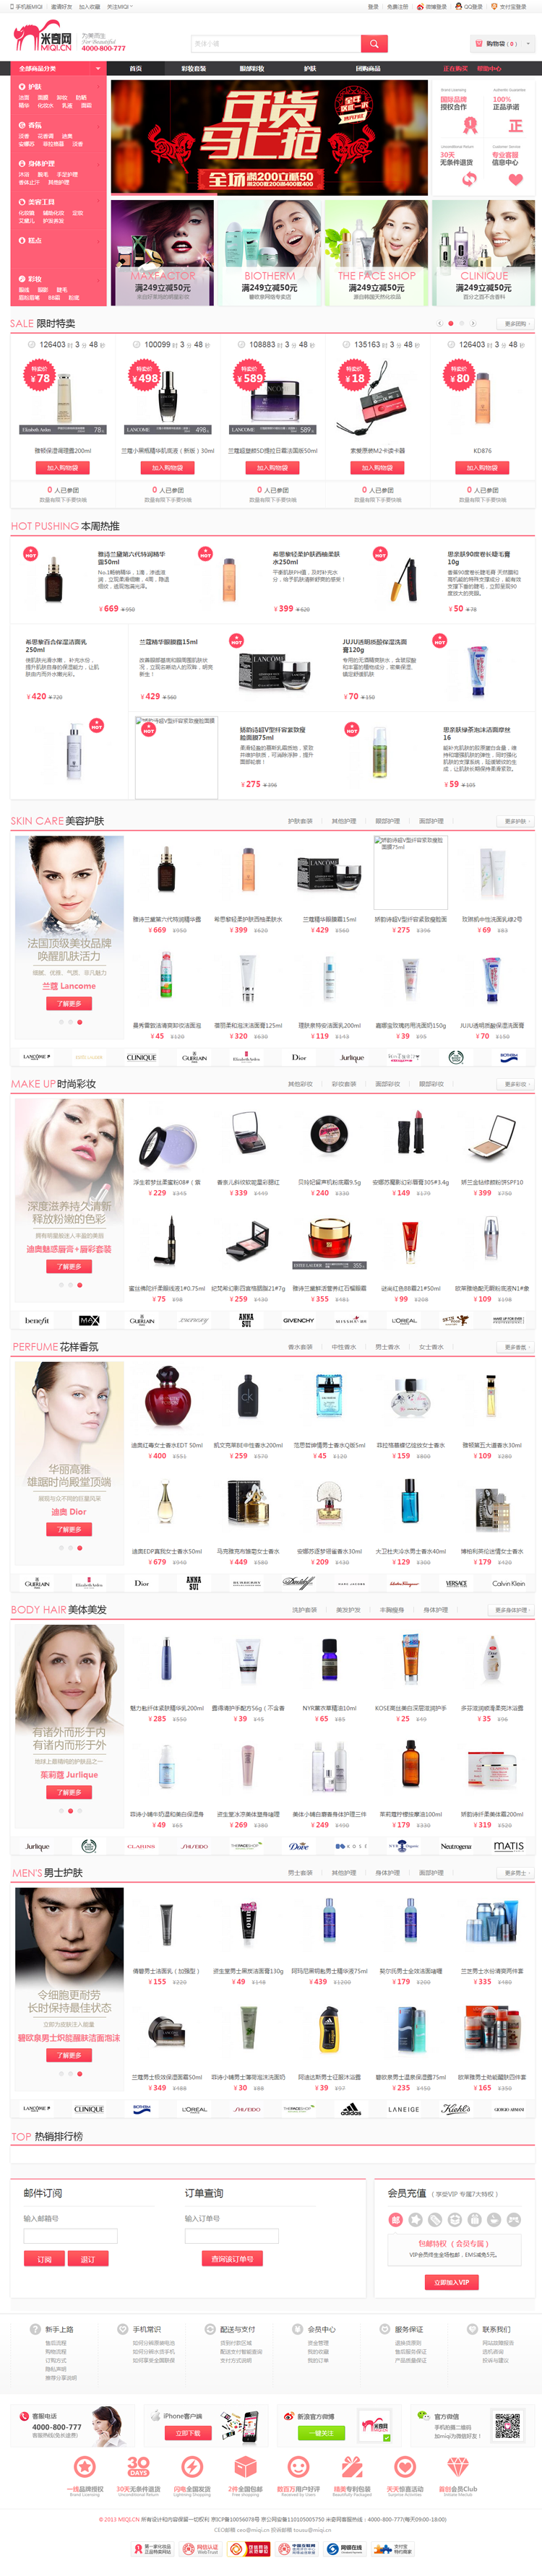 米奇网女性用品化妆品商城购物网站源码带手机版和微信功能